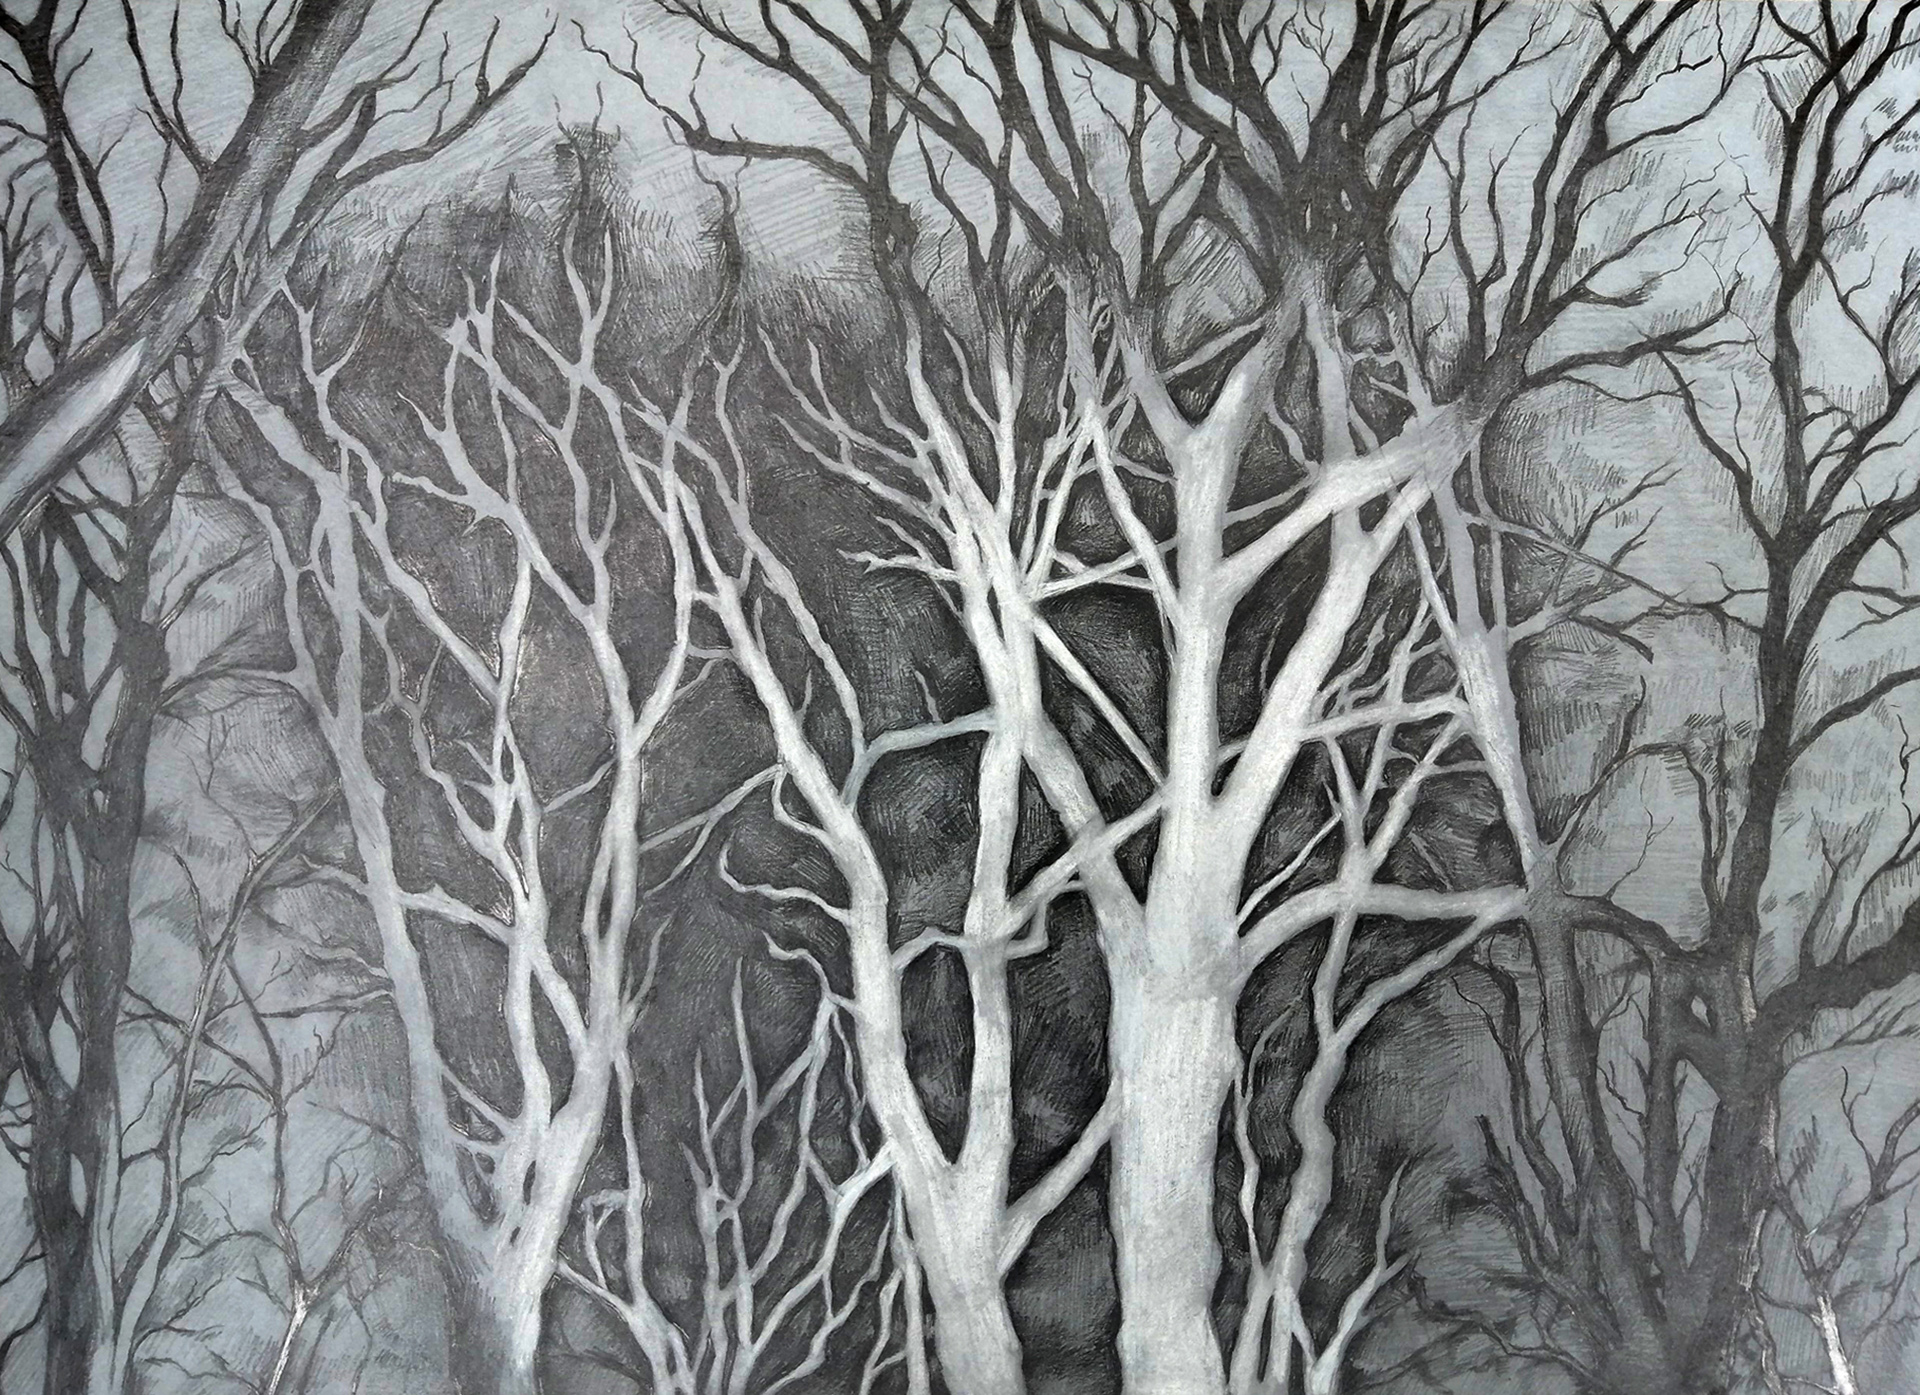 Rysunek na szarym papierze przedstawiający skupisko zimowych drzew nocą oświetlonych w centralnej części. Rysunek przypomina fotograficzny efekt. Wydaje się zatrzymany pomiędzy negatywem a pozytywem.